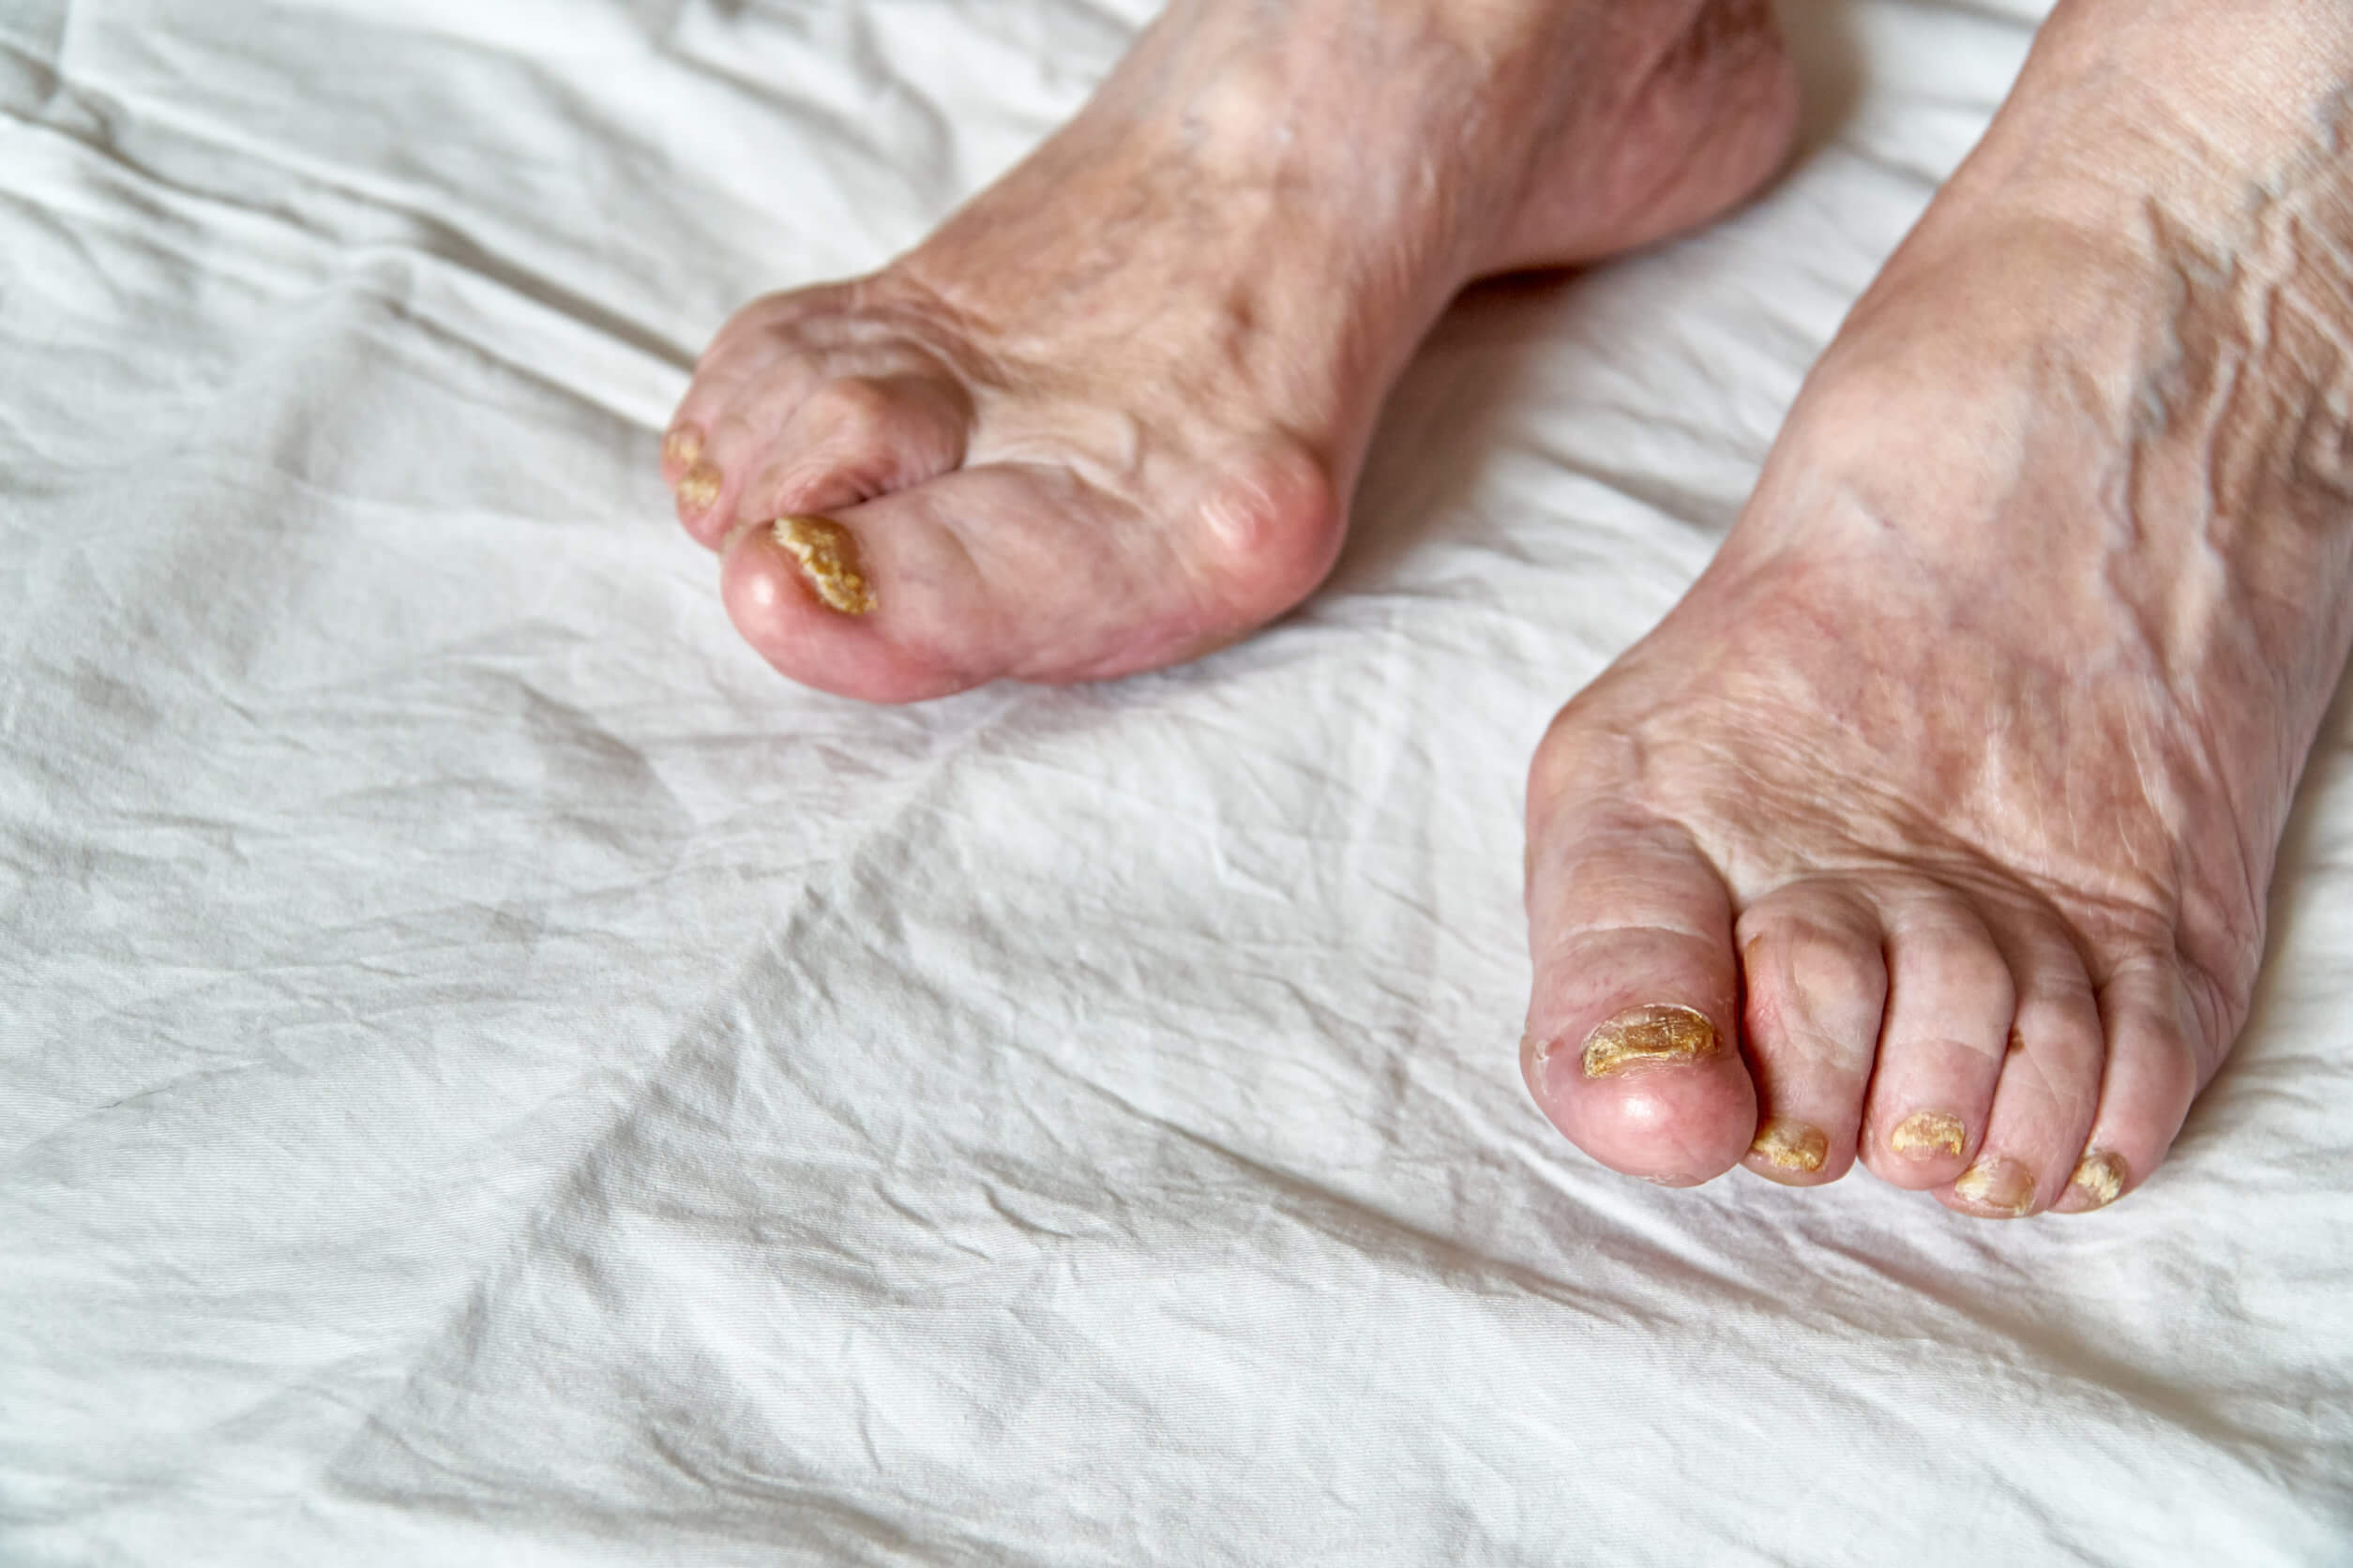 Anatomie des Fußes - Füße eines älteren Menschen